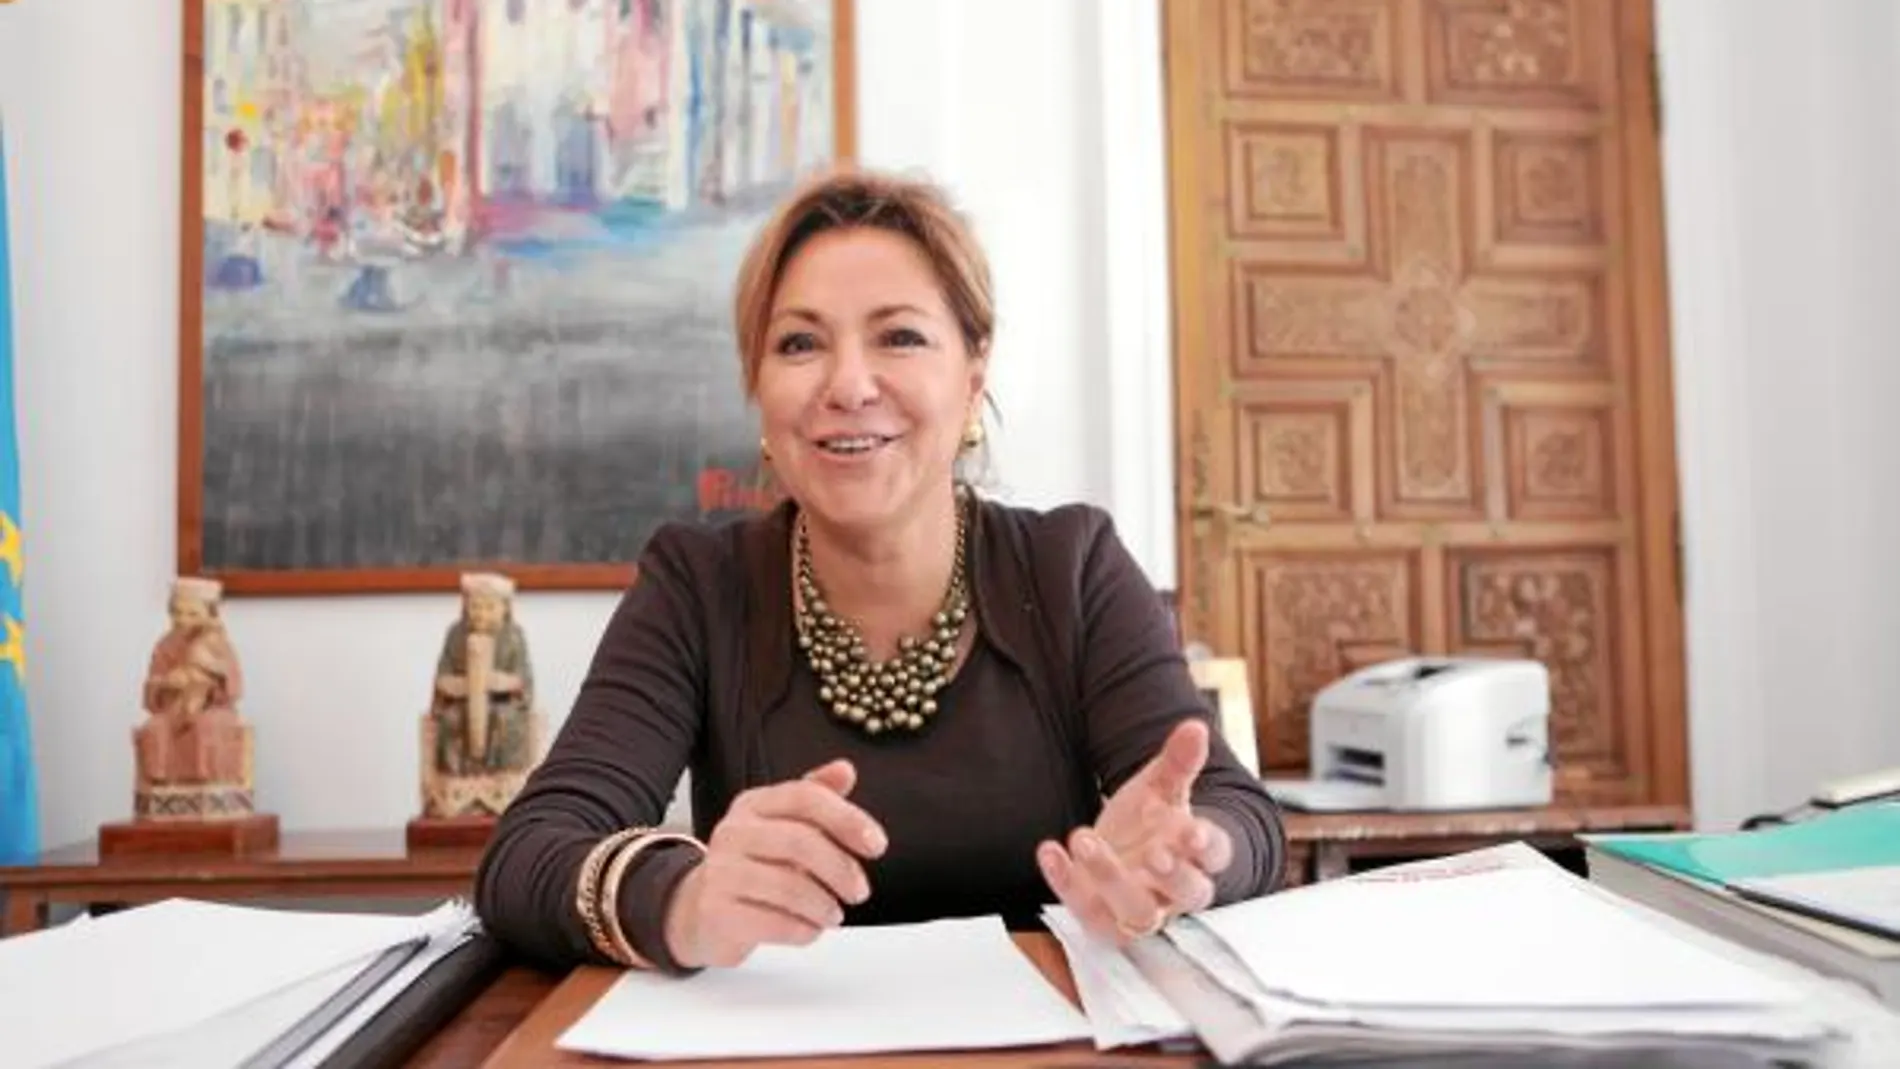 La alcaldesa de Zamora, Rosa Valdeón, apuesta por promover el progreso económico y social de la capital